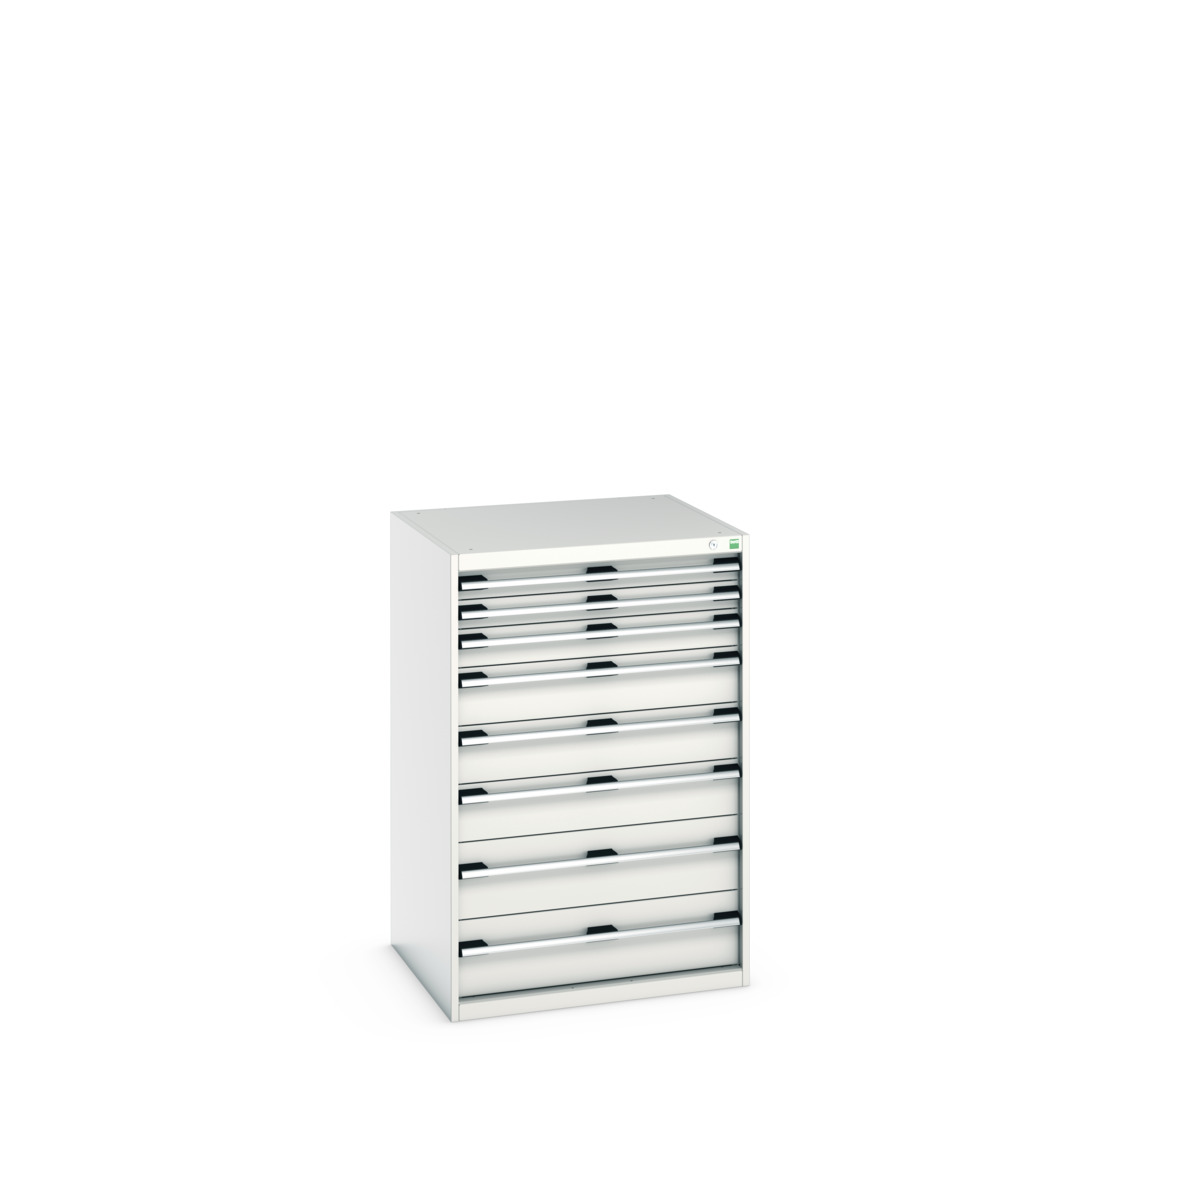 40028034.16V - cubio drawer cabinet